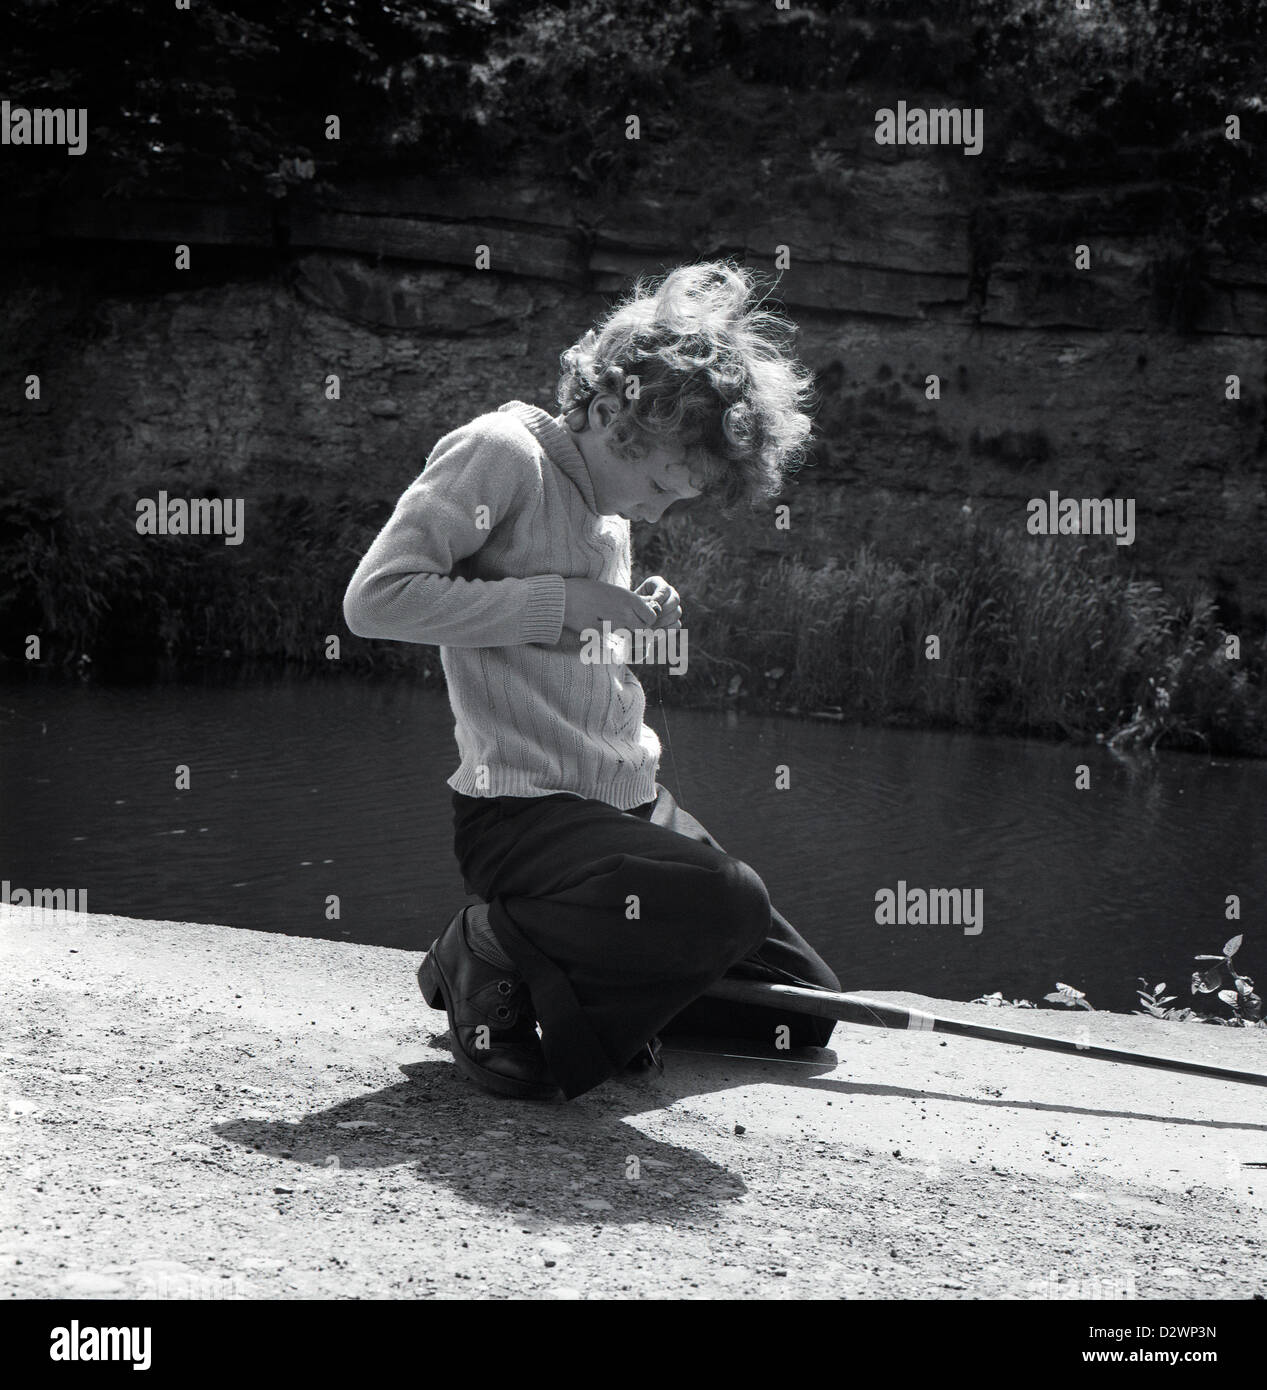 Ein britischer Junge mit einer Angelrute, die sich konzentriert niederkniet Beim Setzen eines Wurms auf einem Angelhaken für Köder Entlang der Leeds & Liverpool Kanal in 1970s West Yorkshire England Großbritannien Großbritannien 1974 KATHY DEWITT Stockfoto